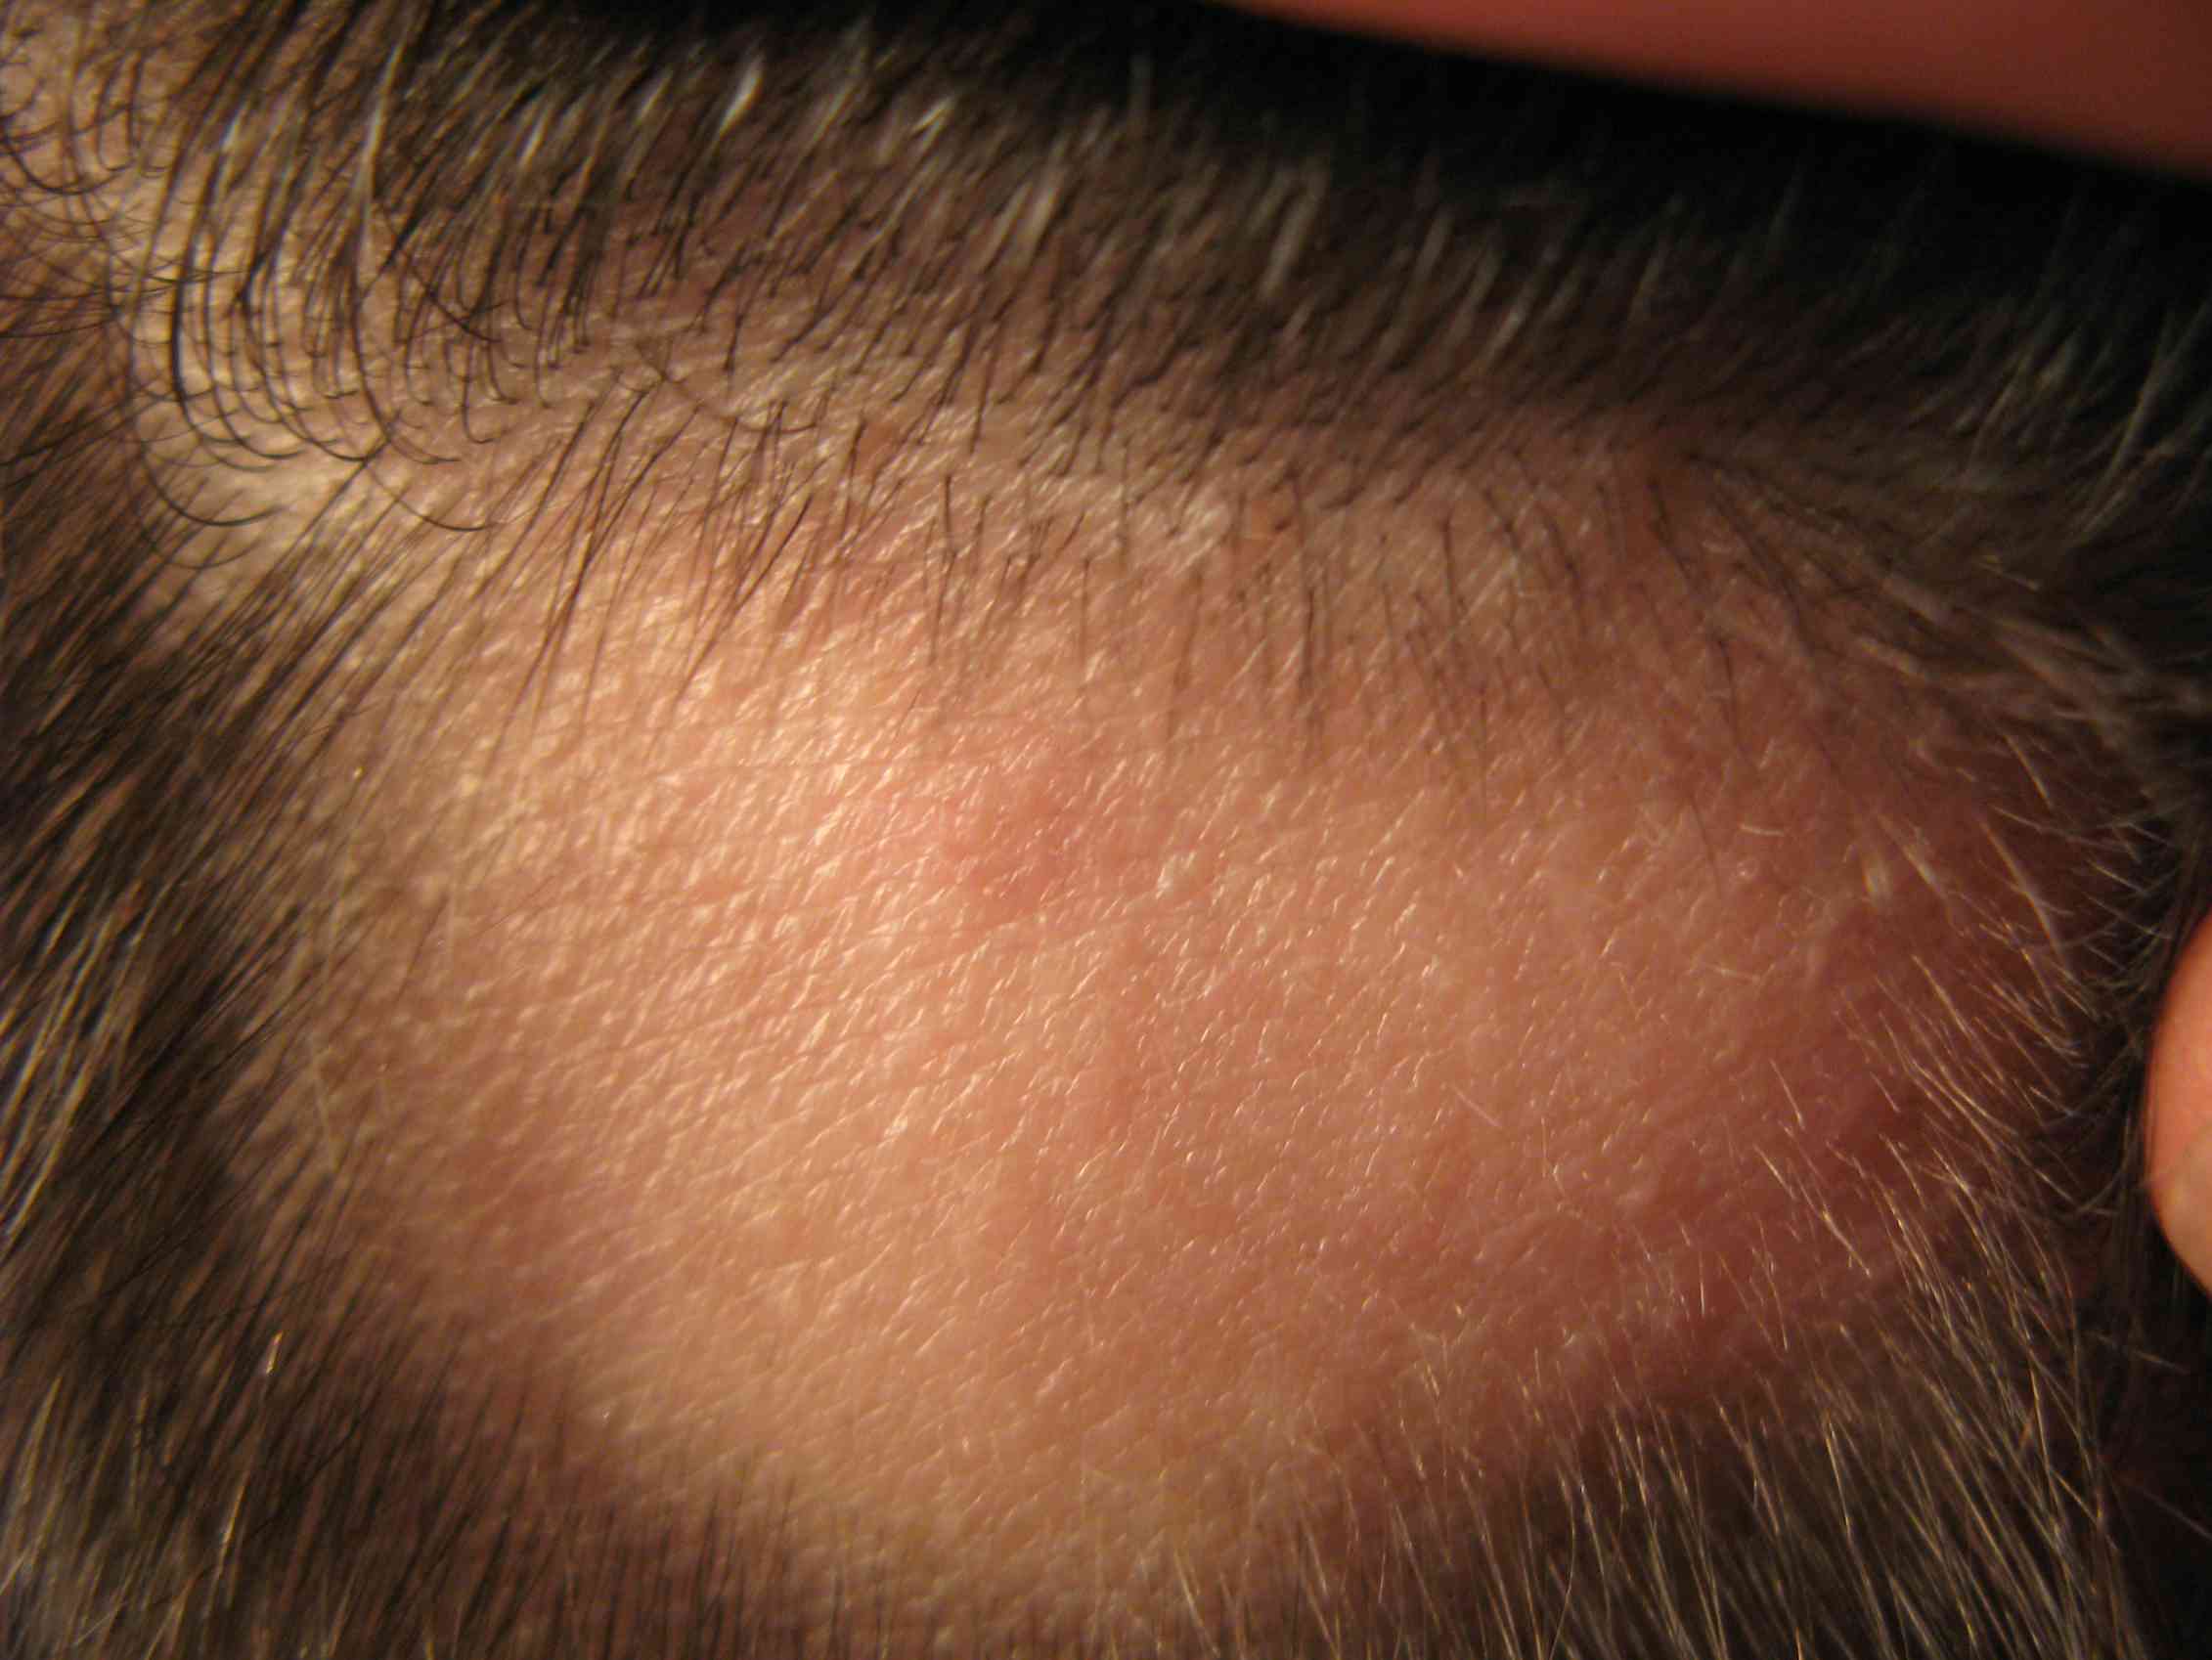 Волосы на лбу ребенка. Фолликулит, гипертрихоз. Очаговая алопеция (alopecia Areata). Трихофития (стригущий лишай).